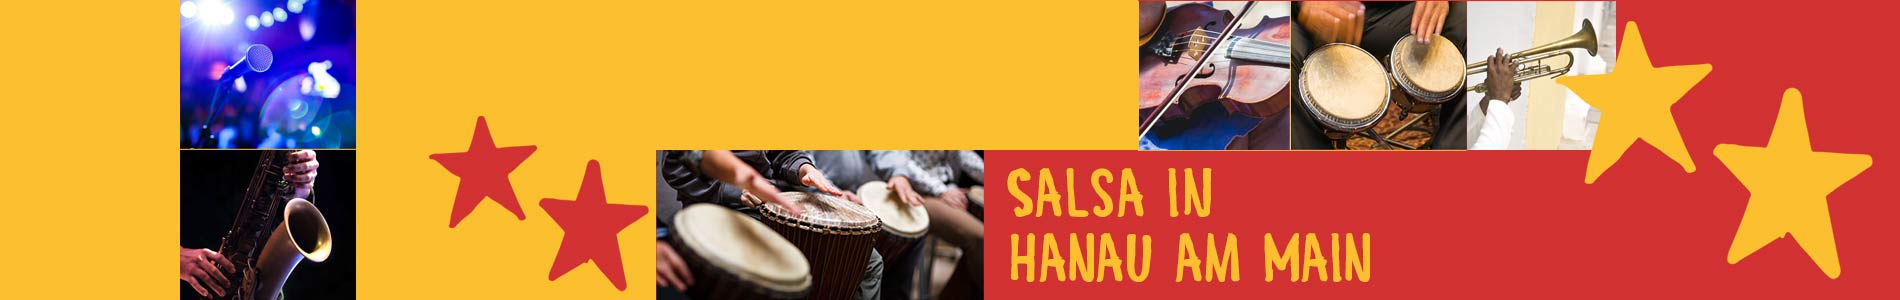 Salsa in Hanau am Main – Salsa lernen und tanzen, Tanzkurse, Partys, Veranstaltungen